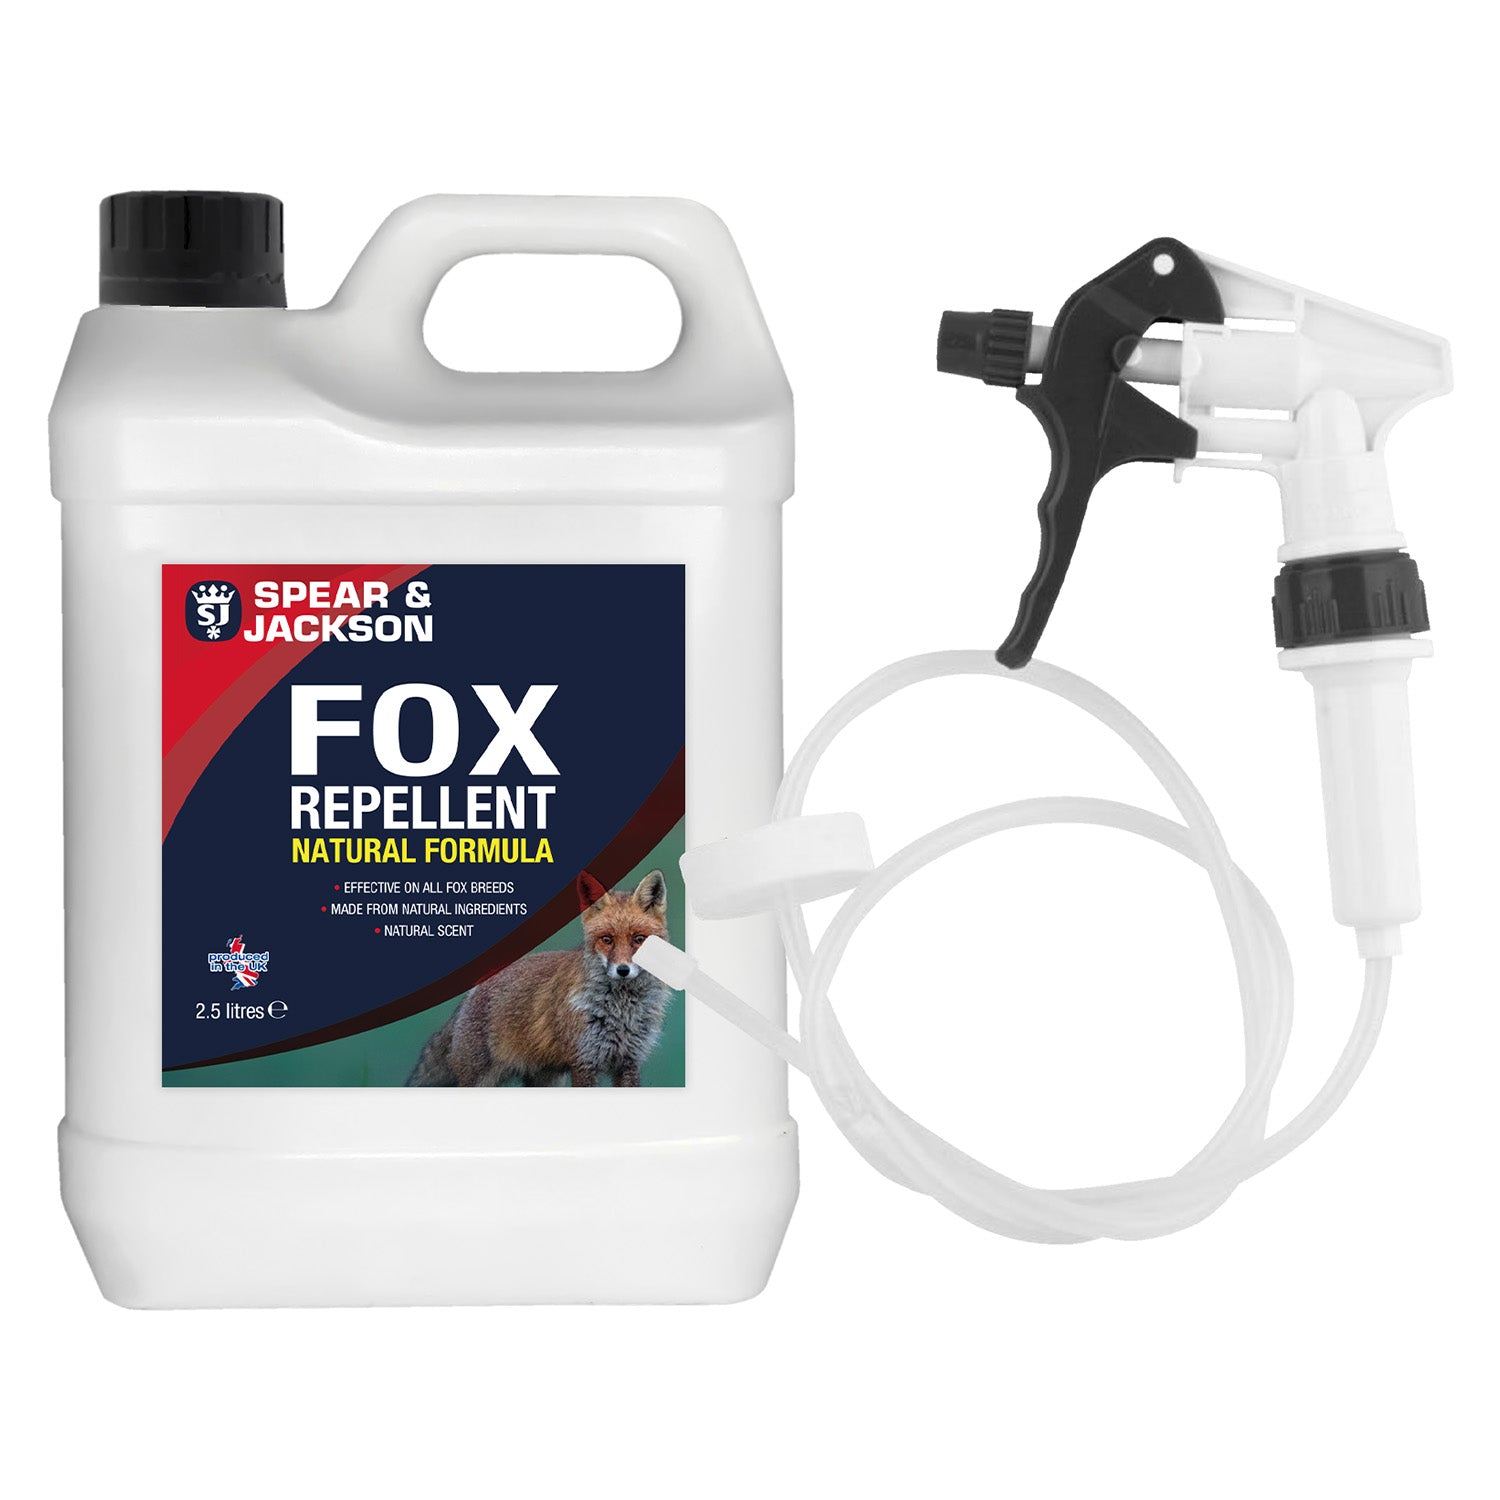 Spear & Jackson Fox Repellent - 2.5L plus Long Hose Trigger